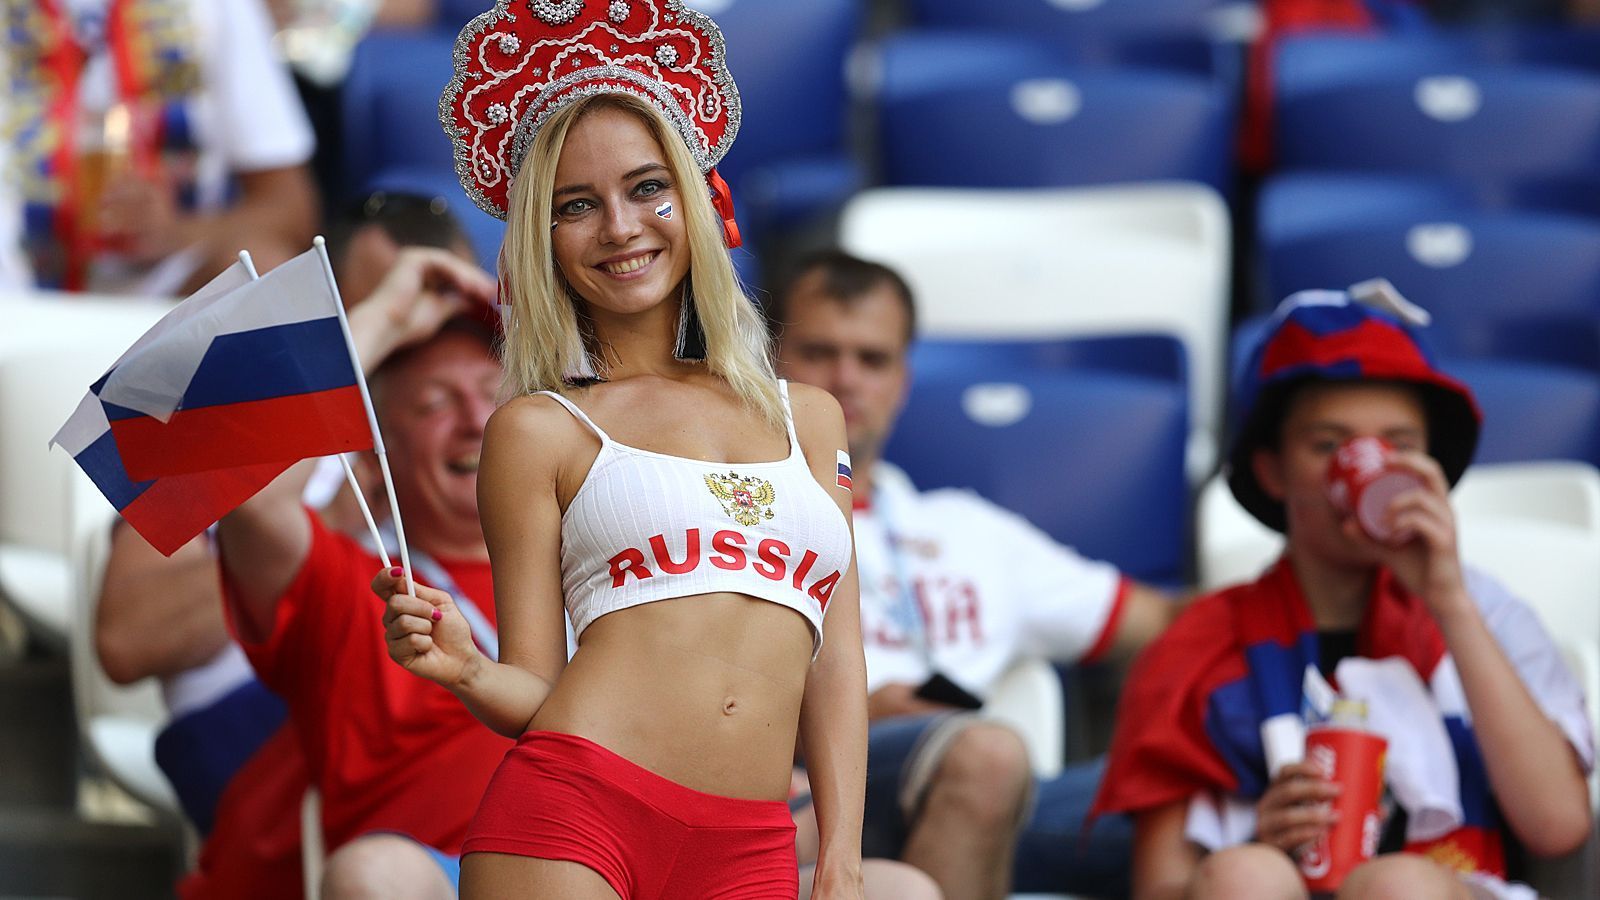 
                <strong>Russland</strong><br>
                Die Russin Natalya Nemchinova sorgte am Rande der Russland-Spiele bereits für Aufsehen. Nicht wenige Medien haben sie bereits zum schönsten Fan der WM gewählt.
              